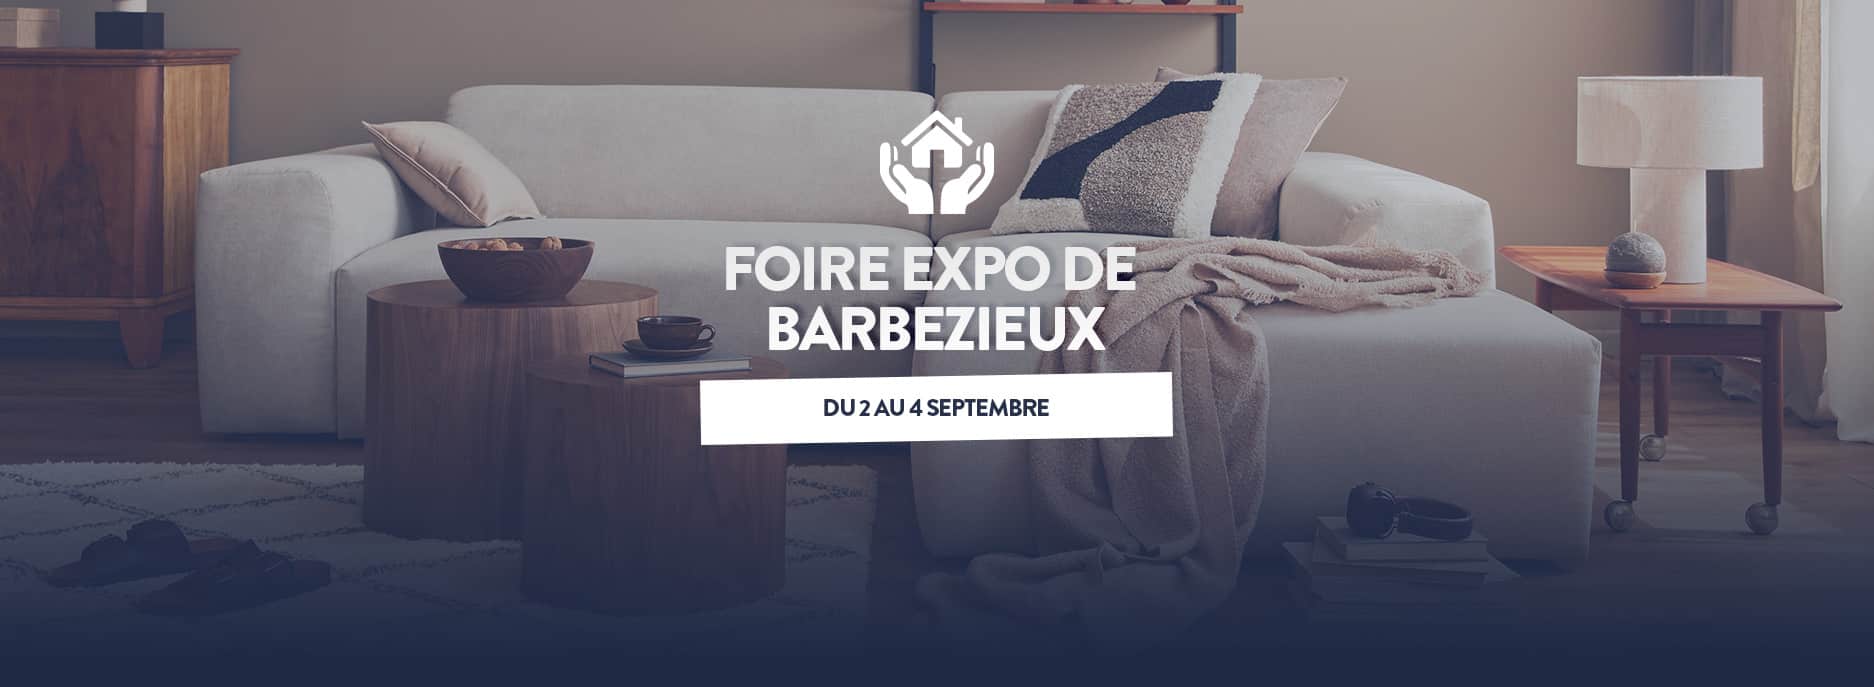 Foire exposition Barbezieux du 2 au 4 Septembre